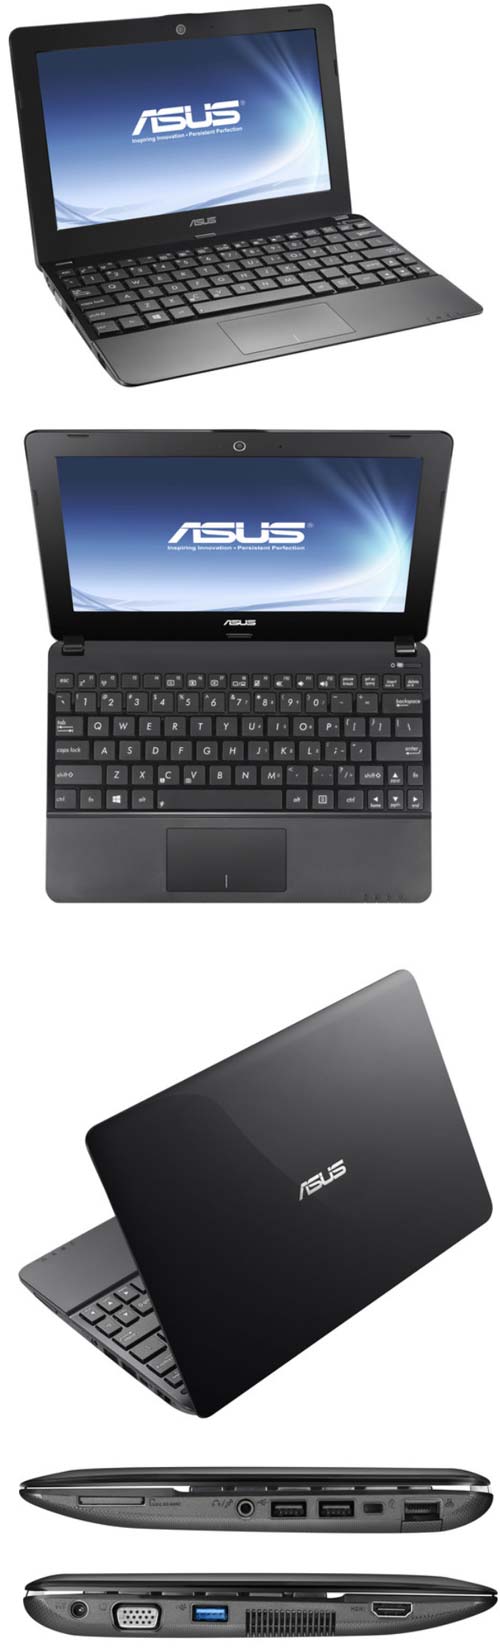 Доступный ноутбук 1015E-DS01 от ASUS